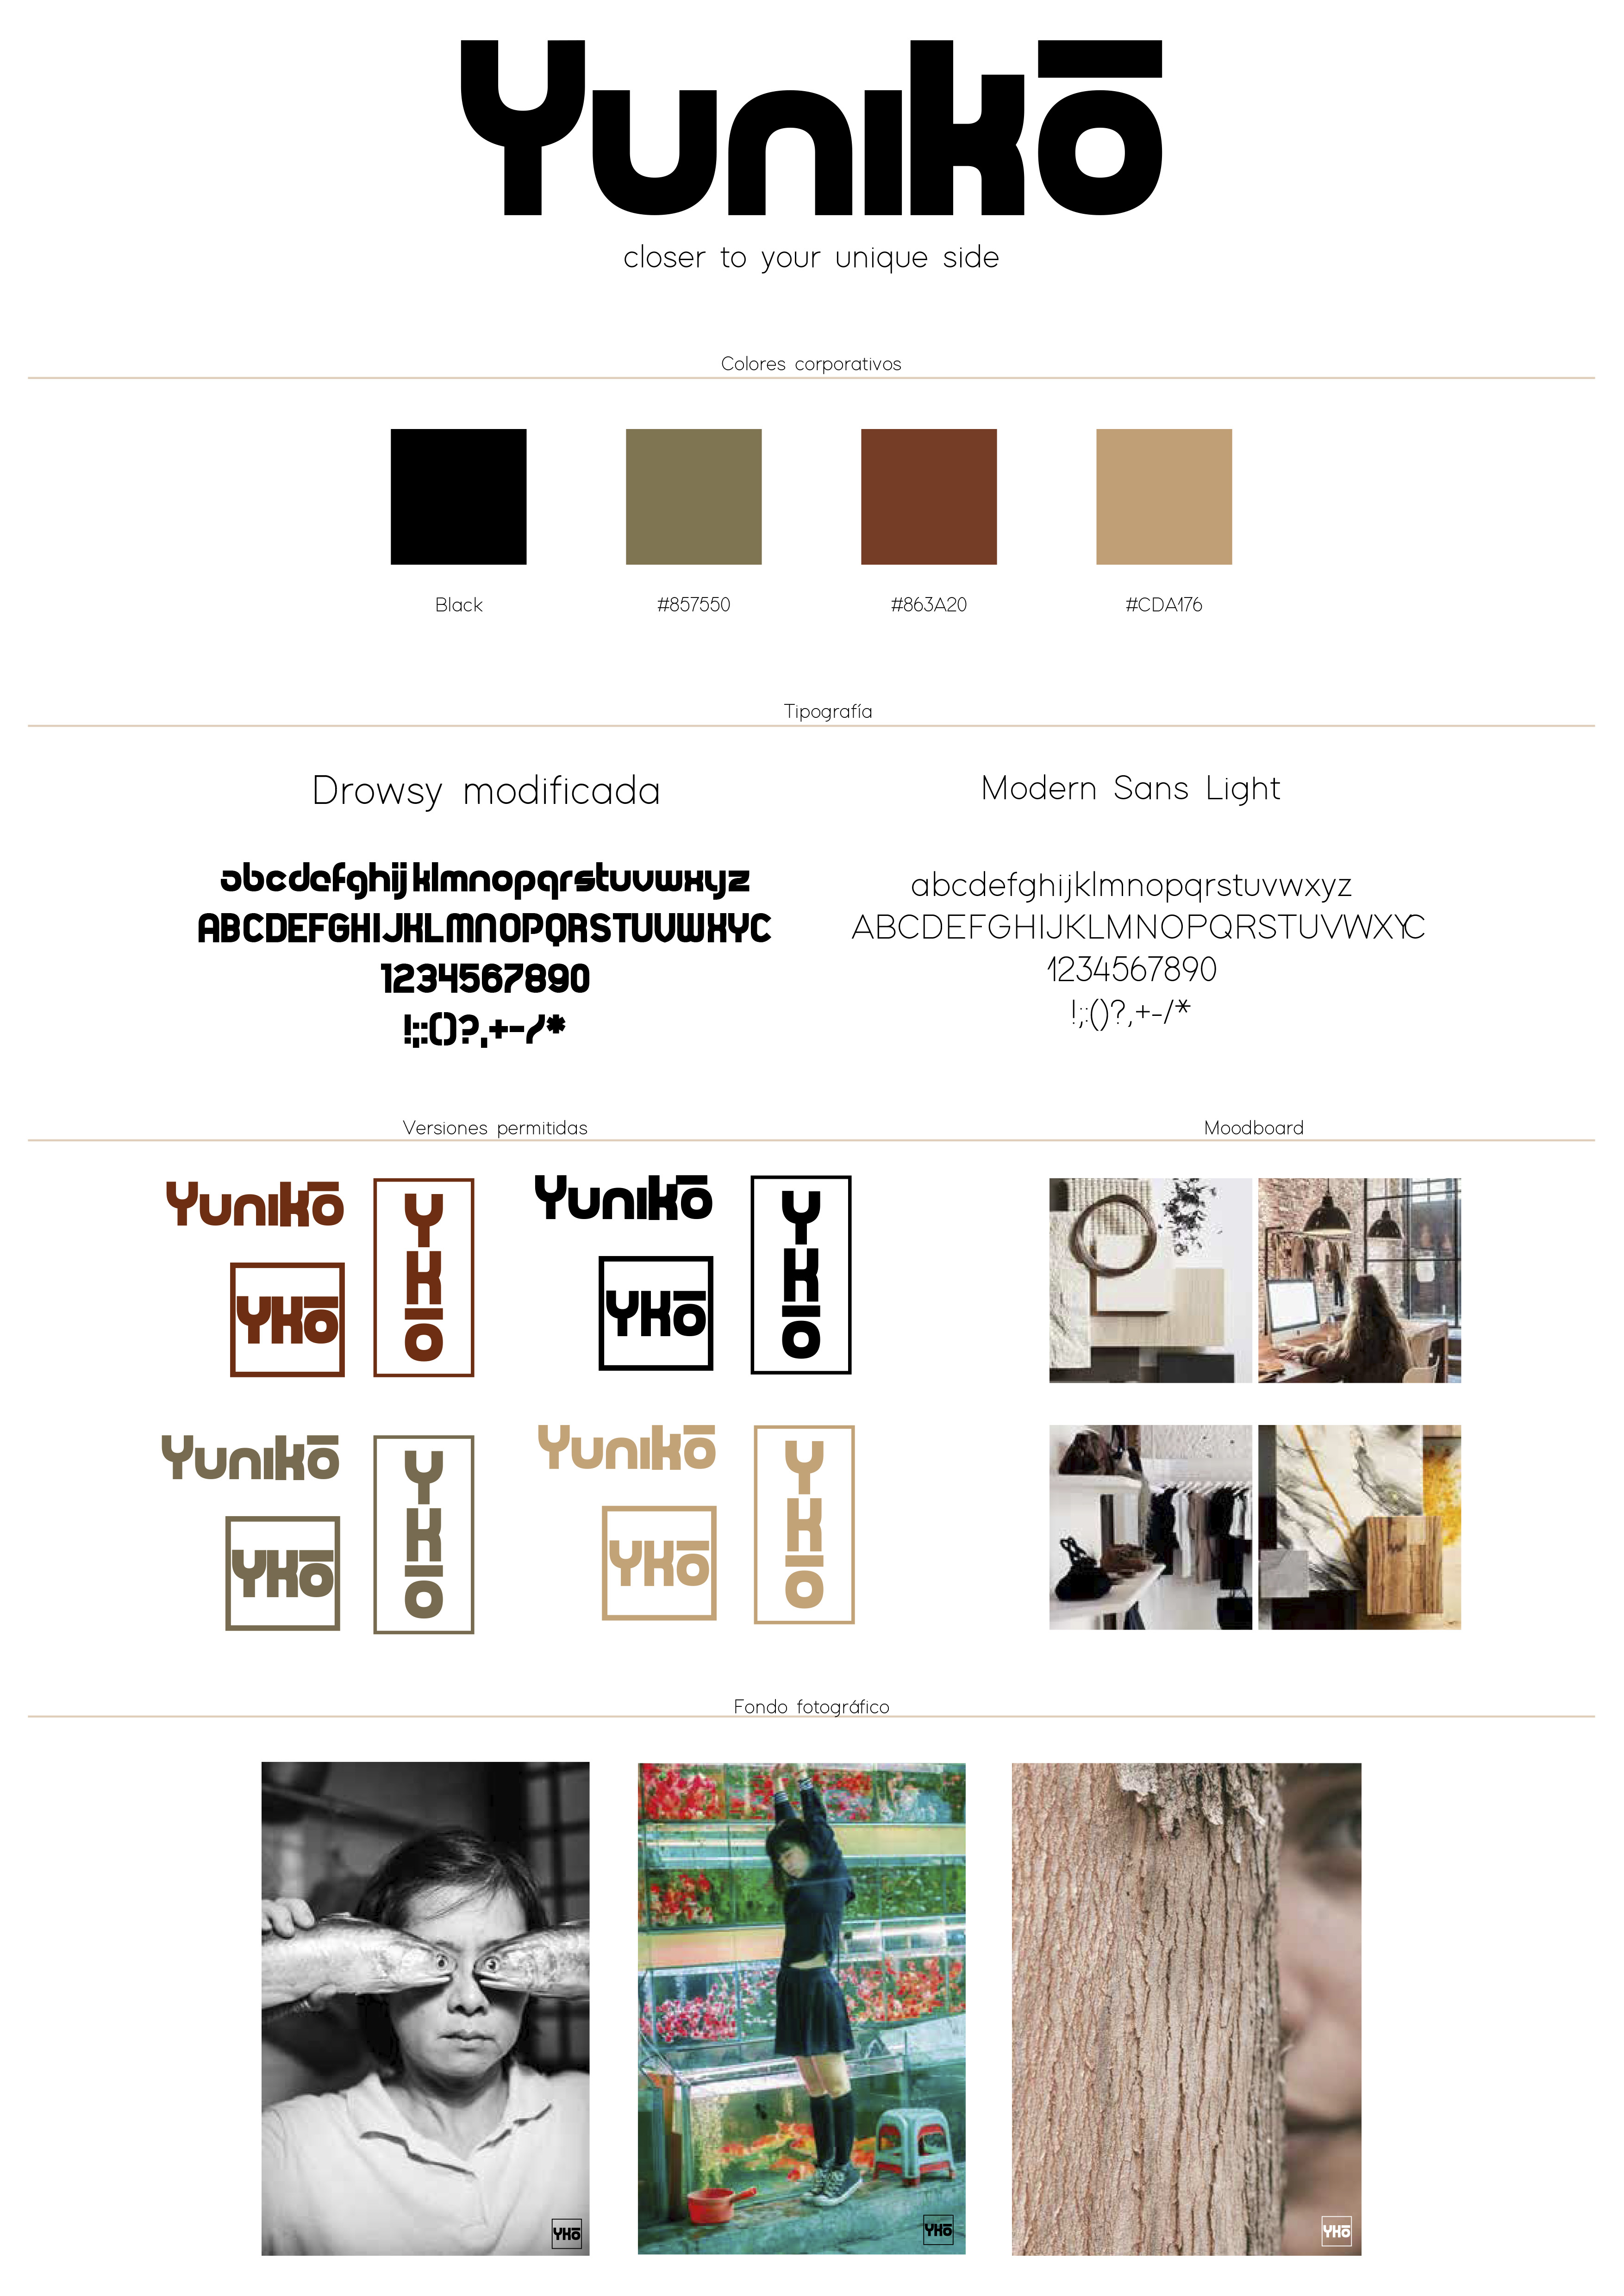 Yuniko (Proyecto de branding para una marca de ropa) by Gely Gonzalez - Creative Work